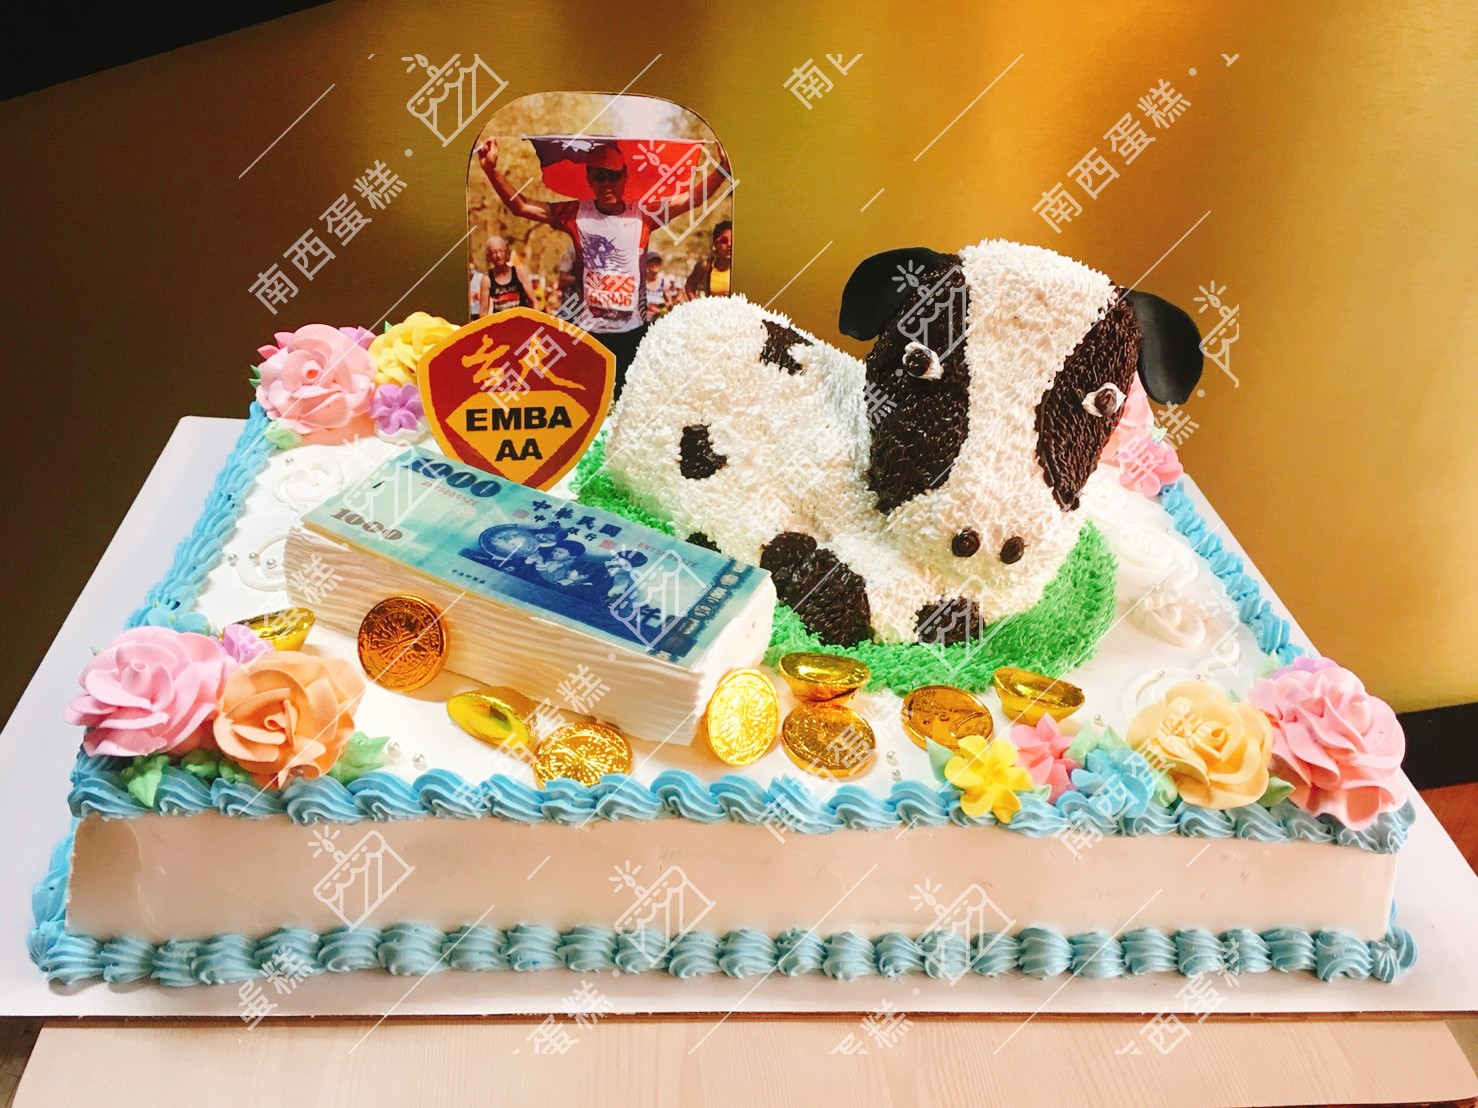 台北動物造型蛋糕-南西蛋糕